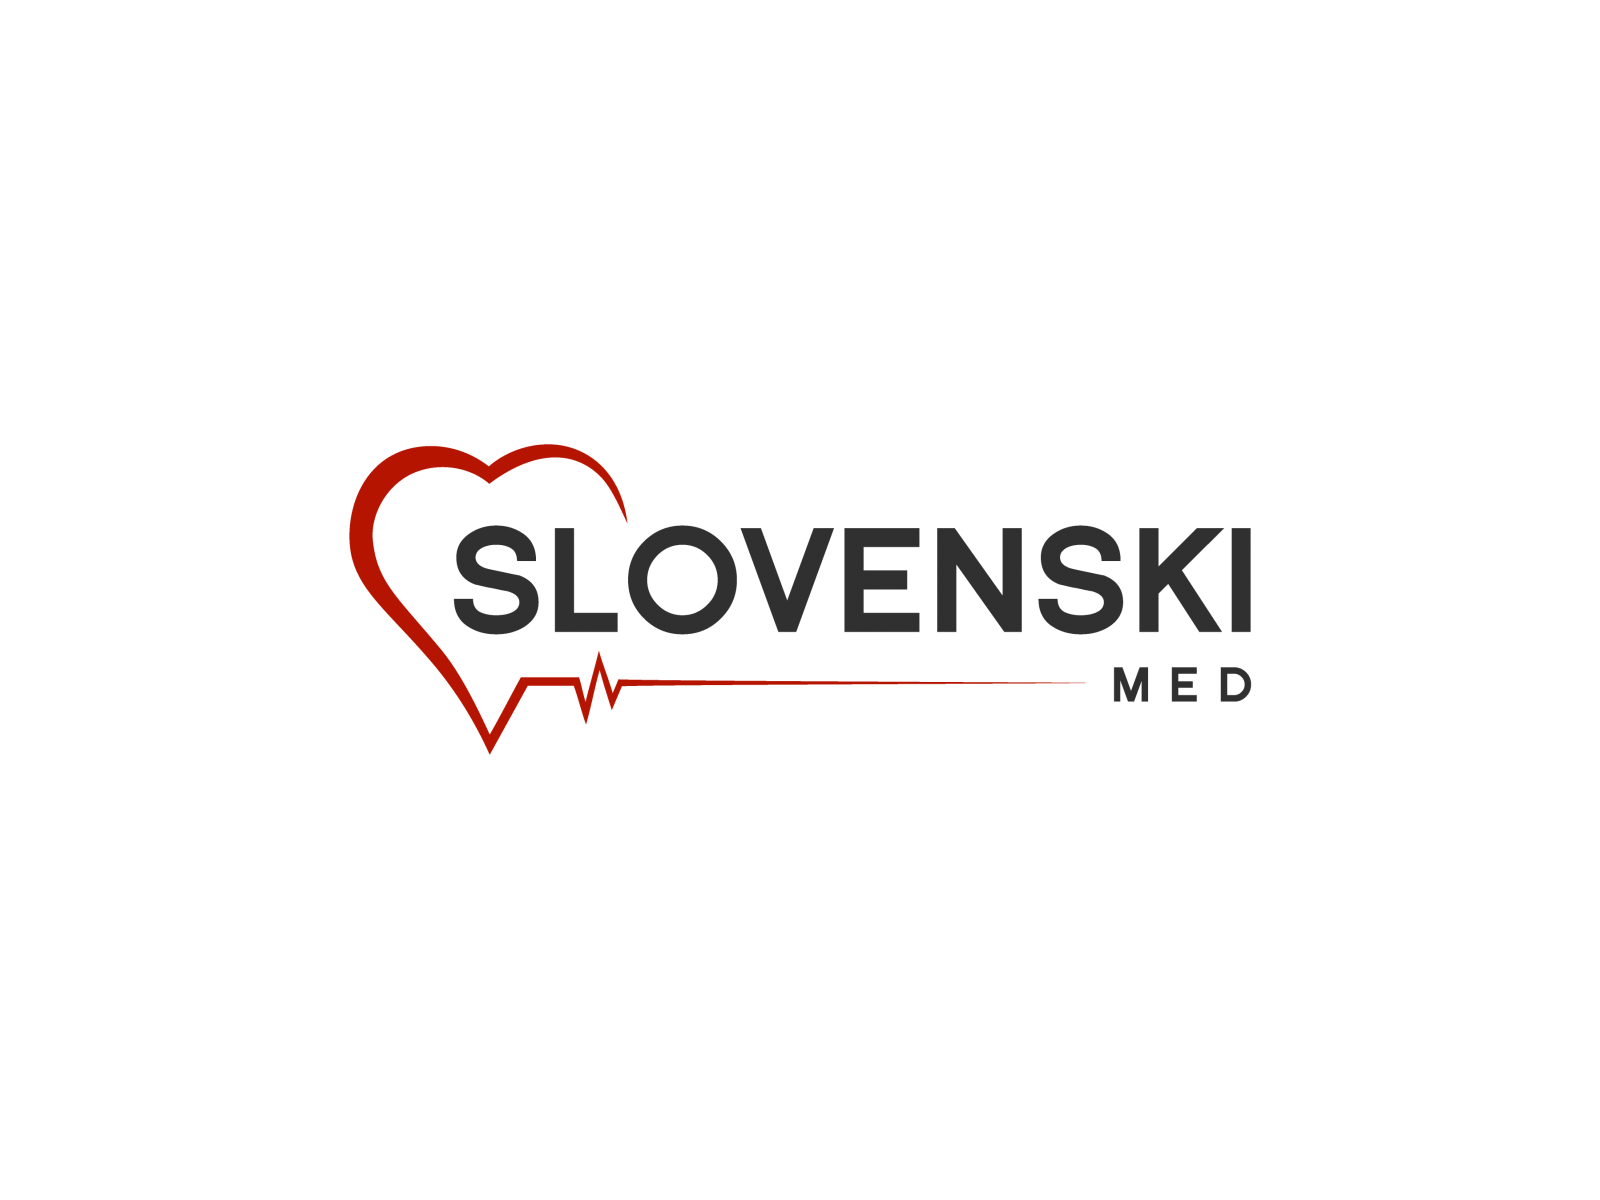 SLOVENSKI MED - logo-slovenski.png